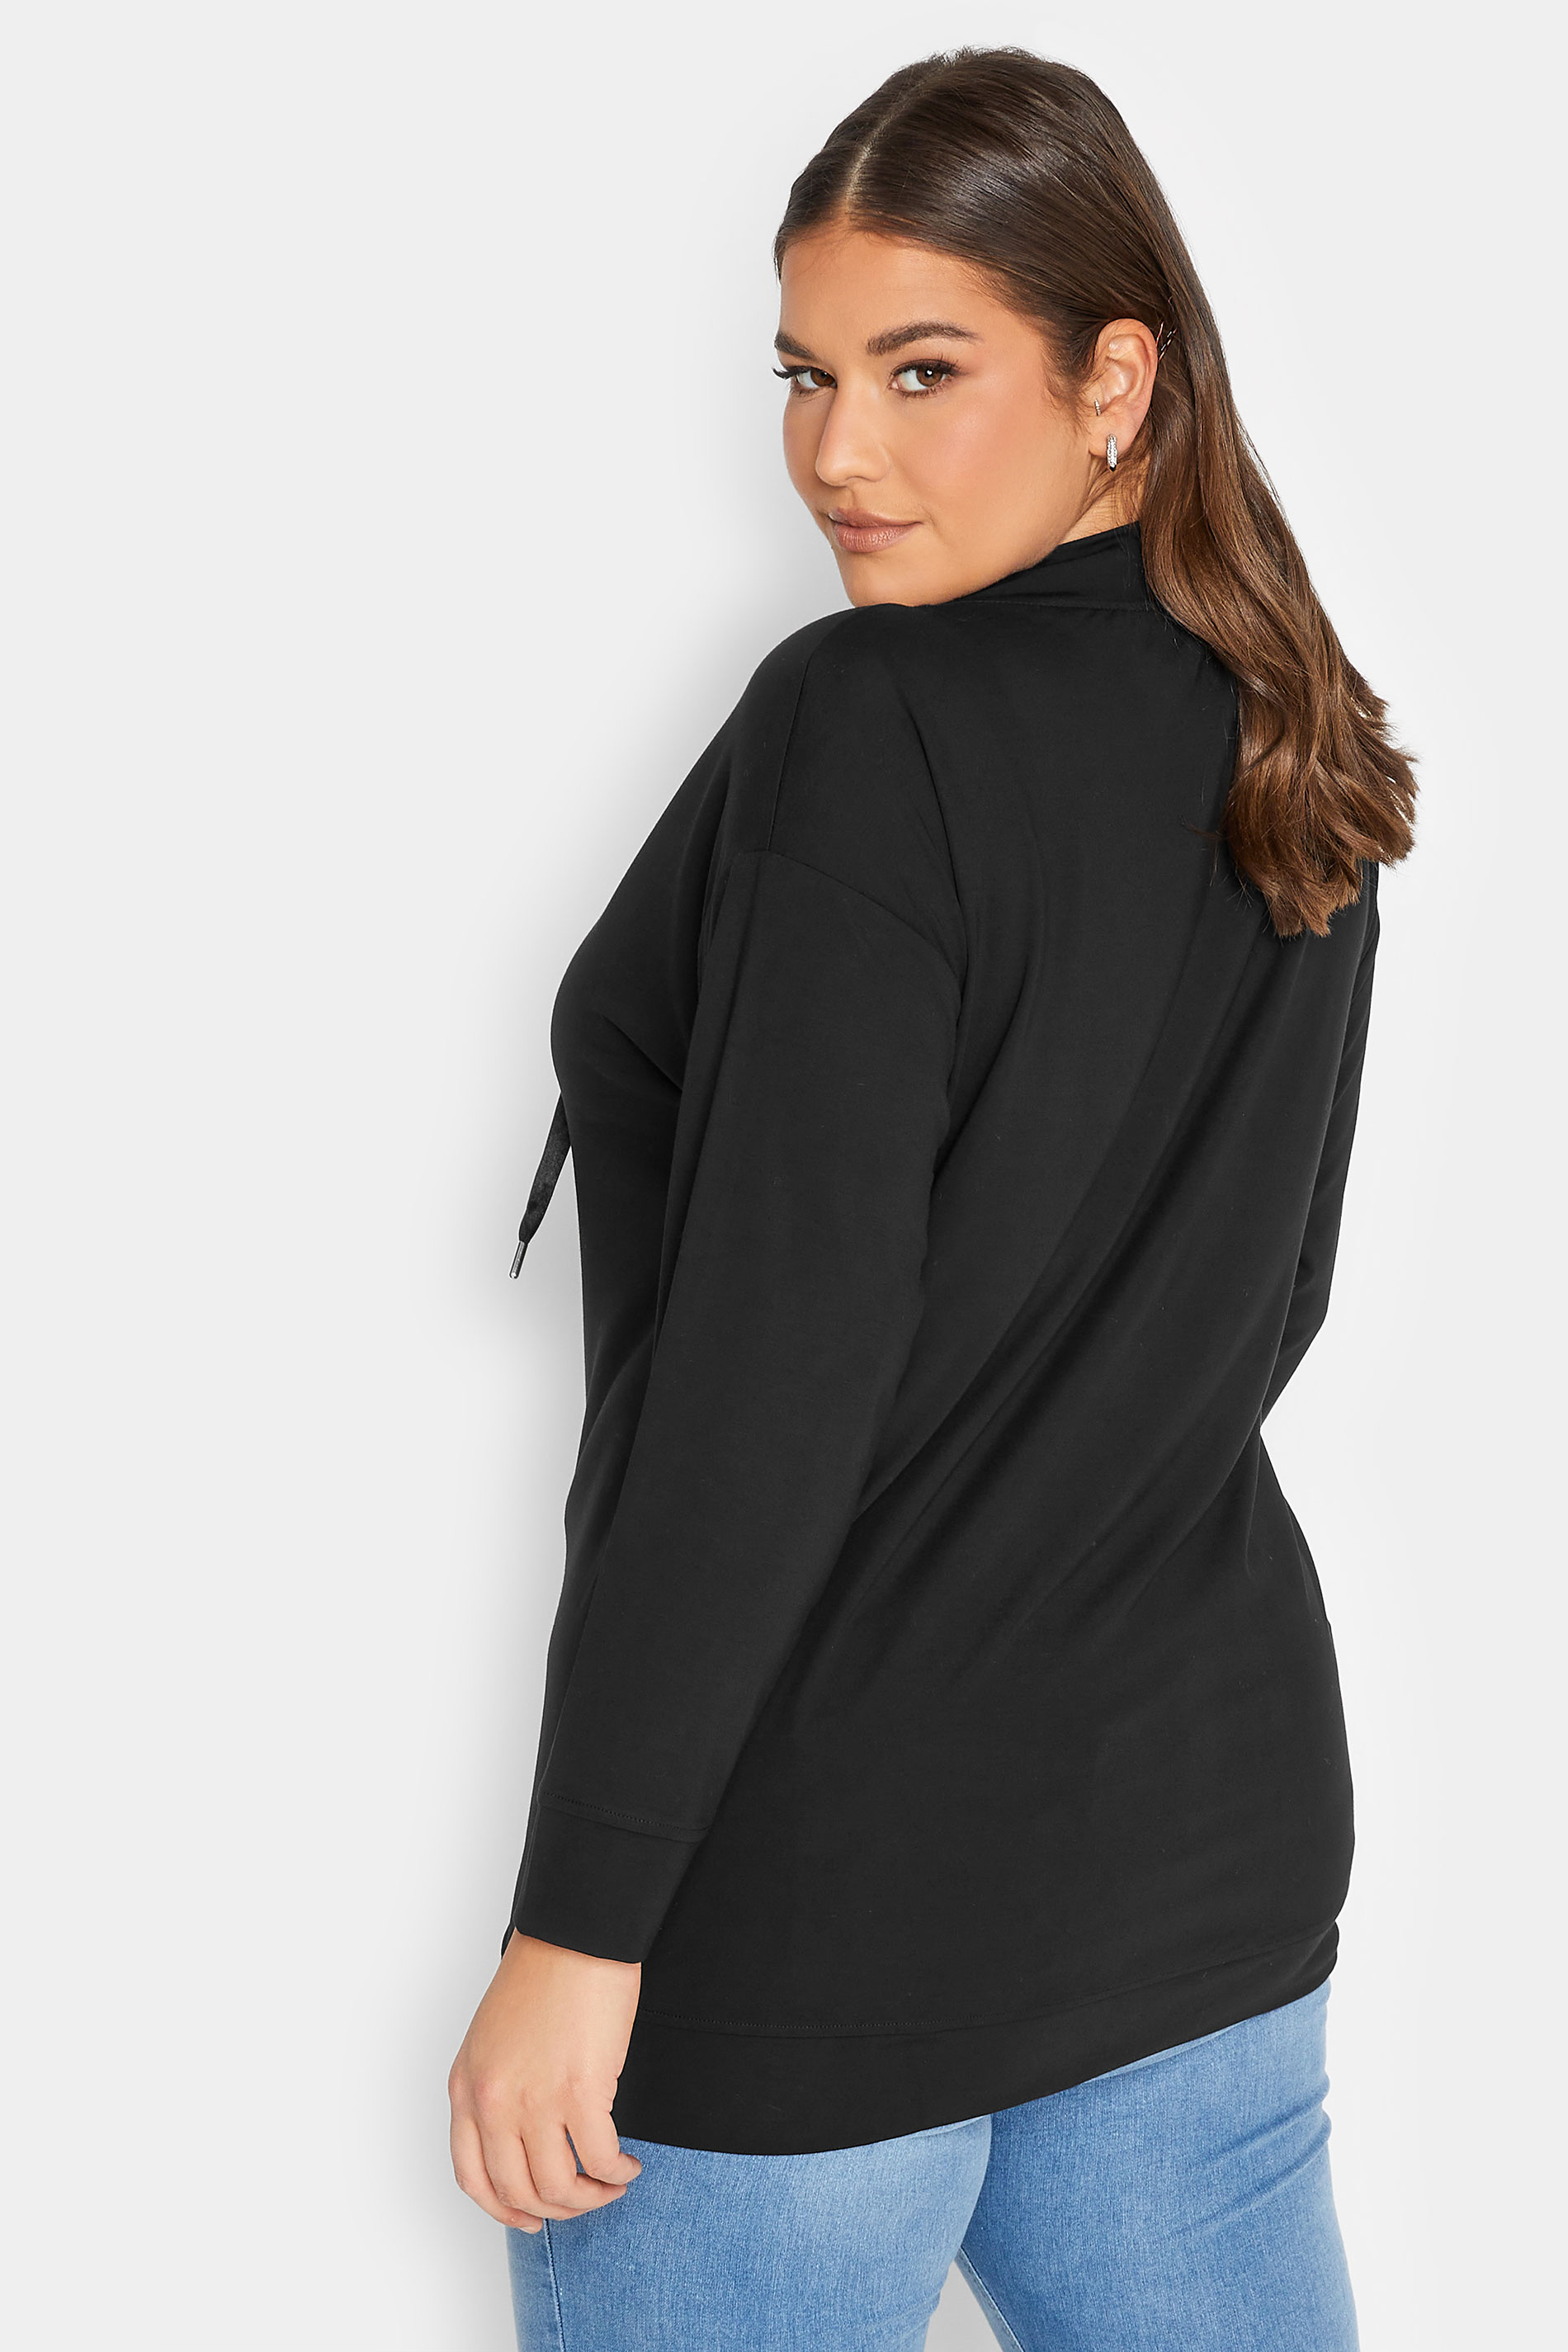 YOURS LUXURY Plus Size Black Star Embellished Sweatshirt | Yours Clothing 3